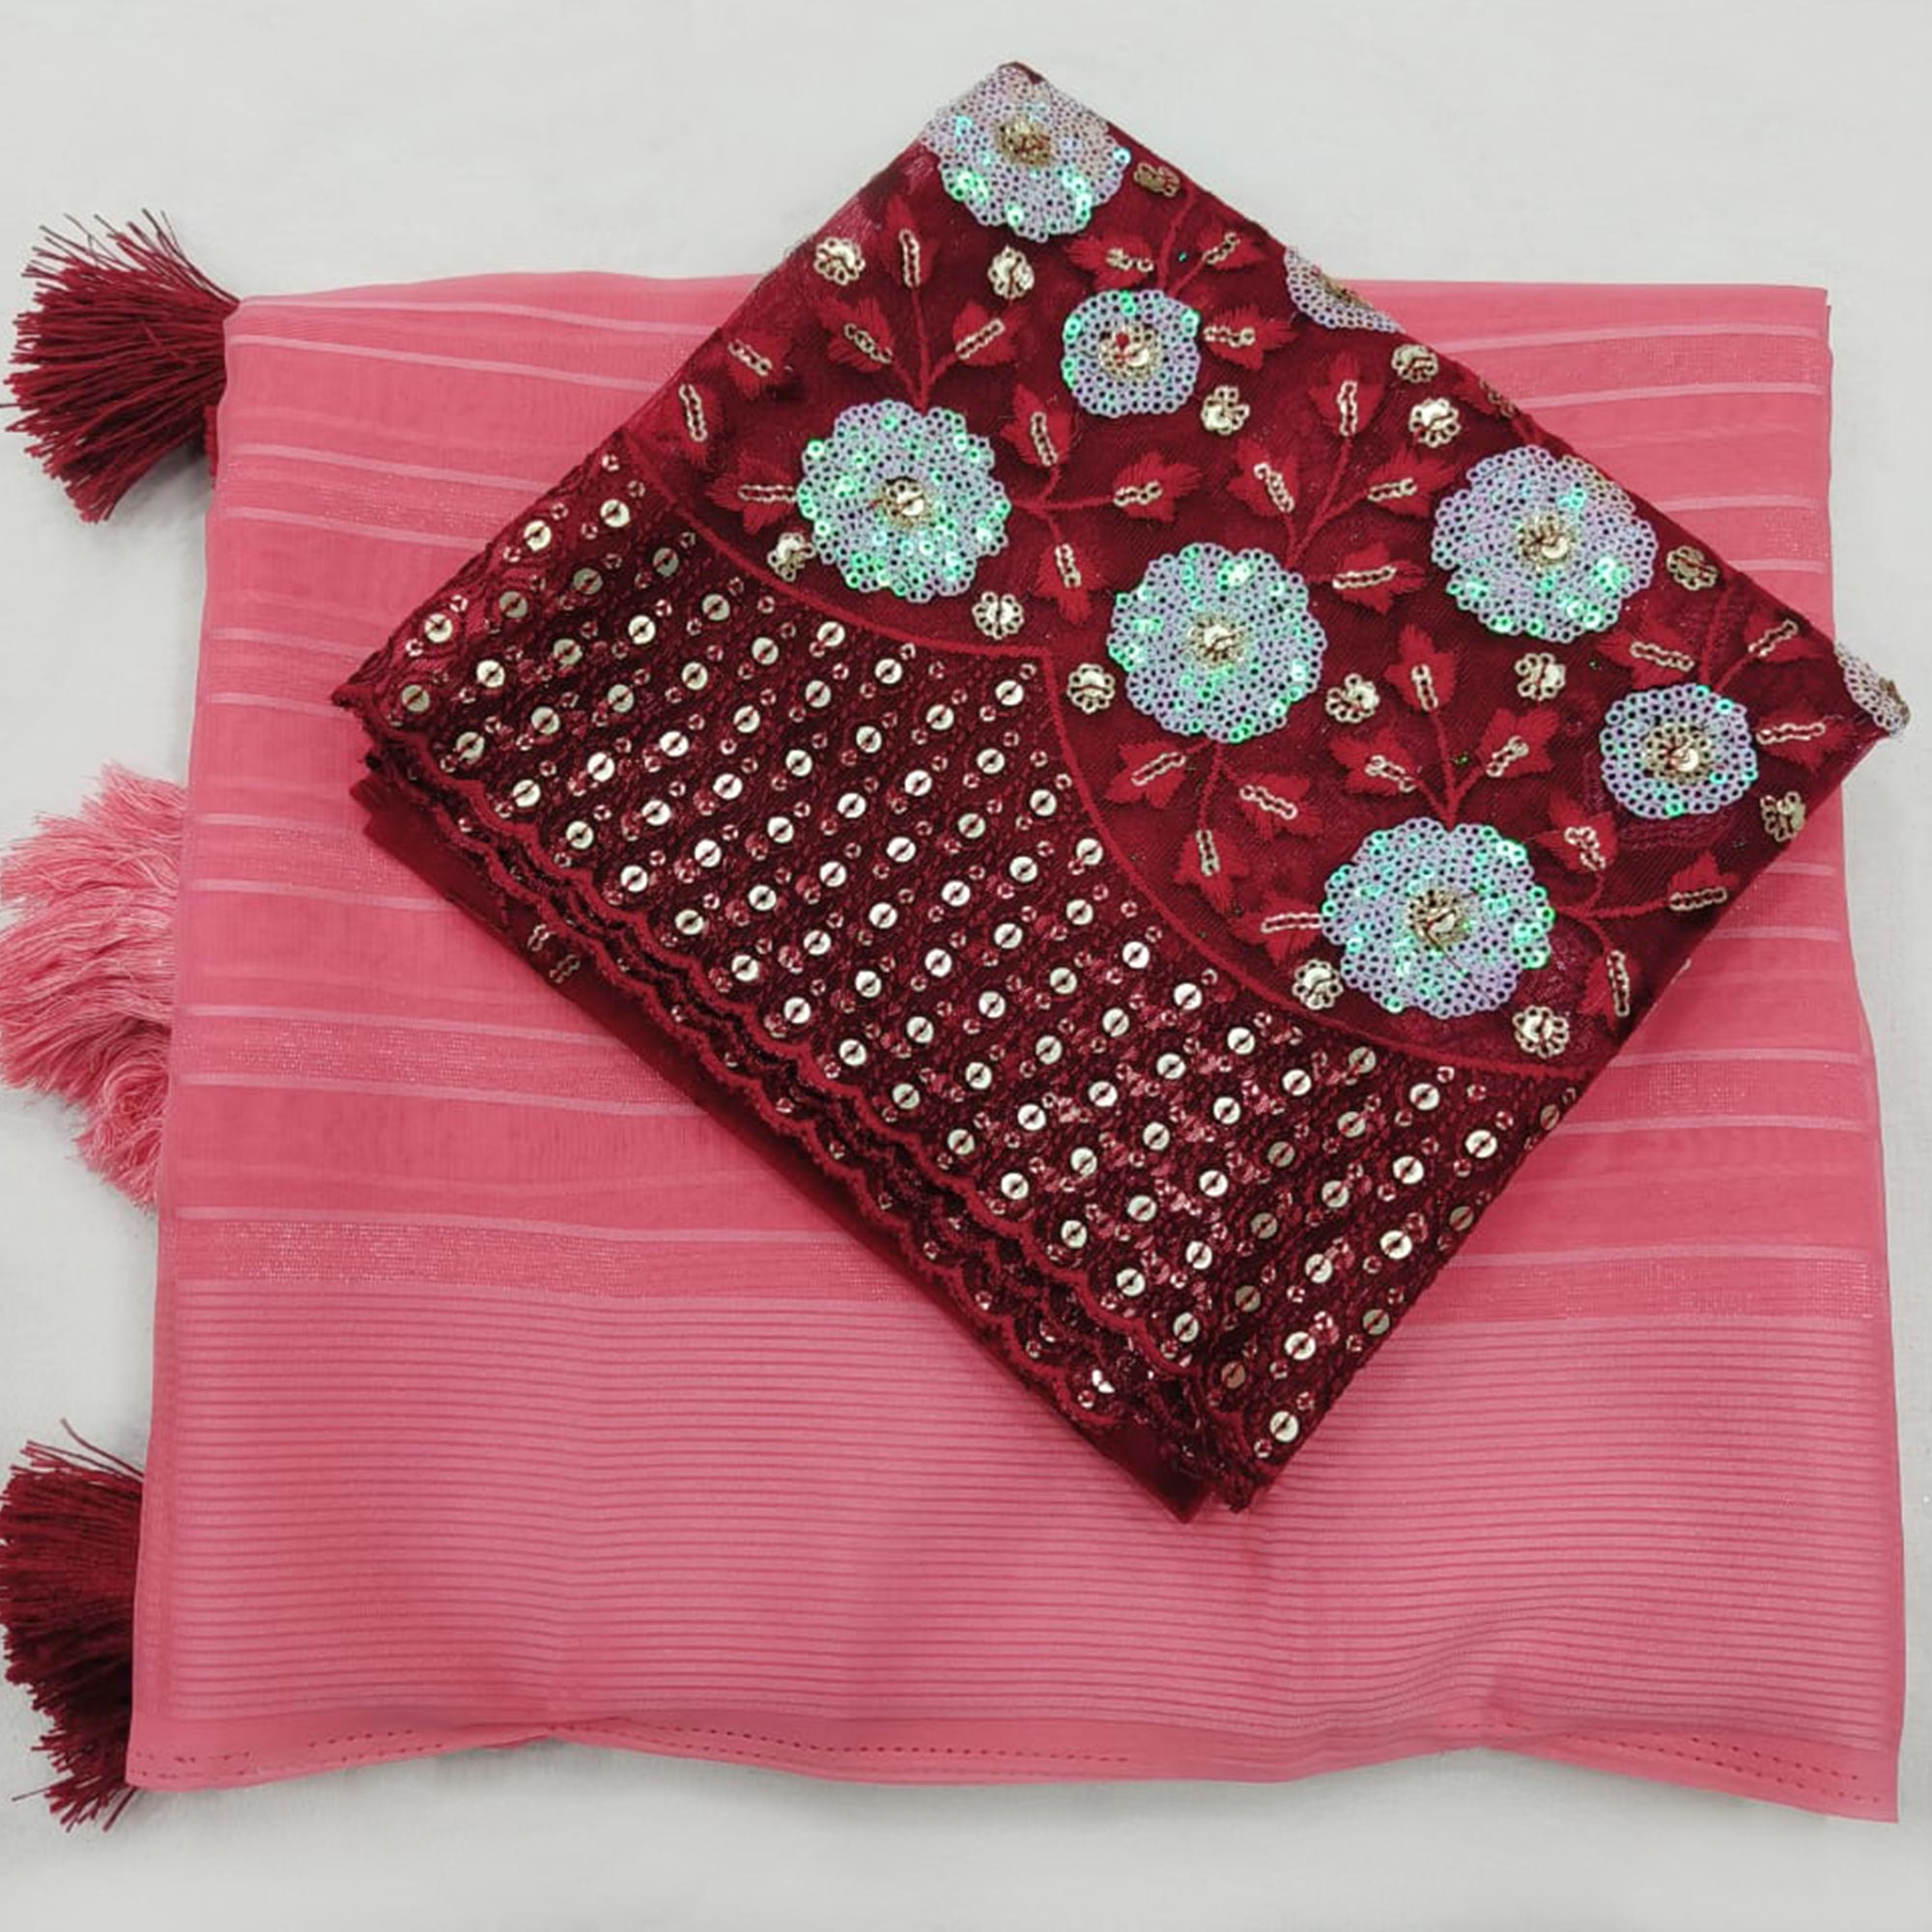 Gajari Pink Zari Striped Chiffon Saree With Tassels